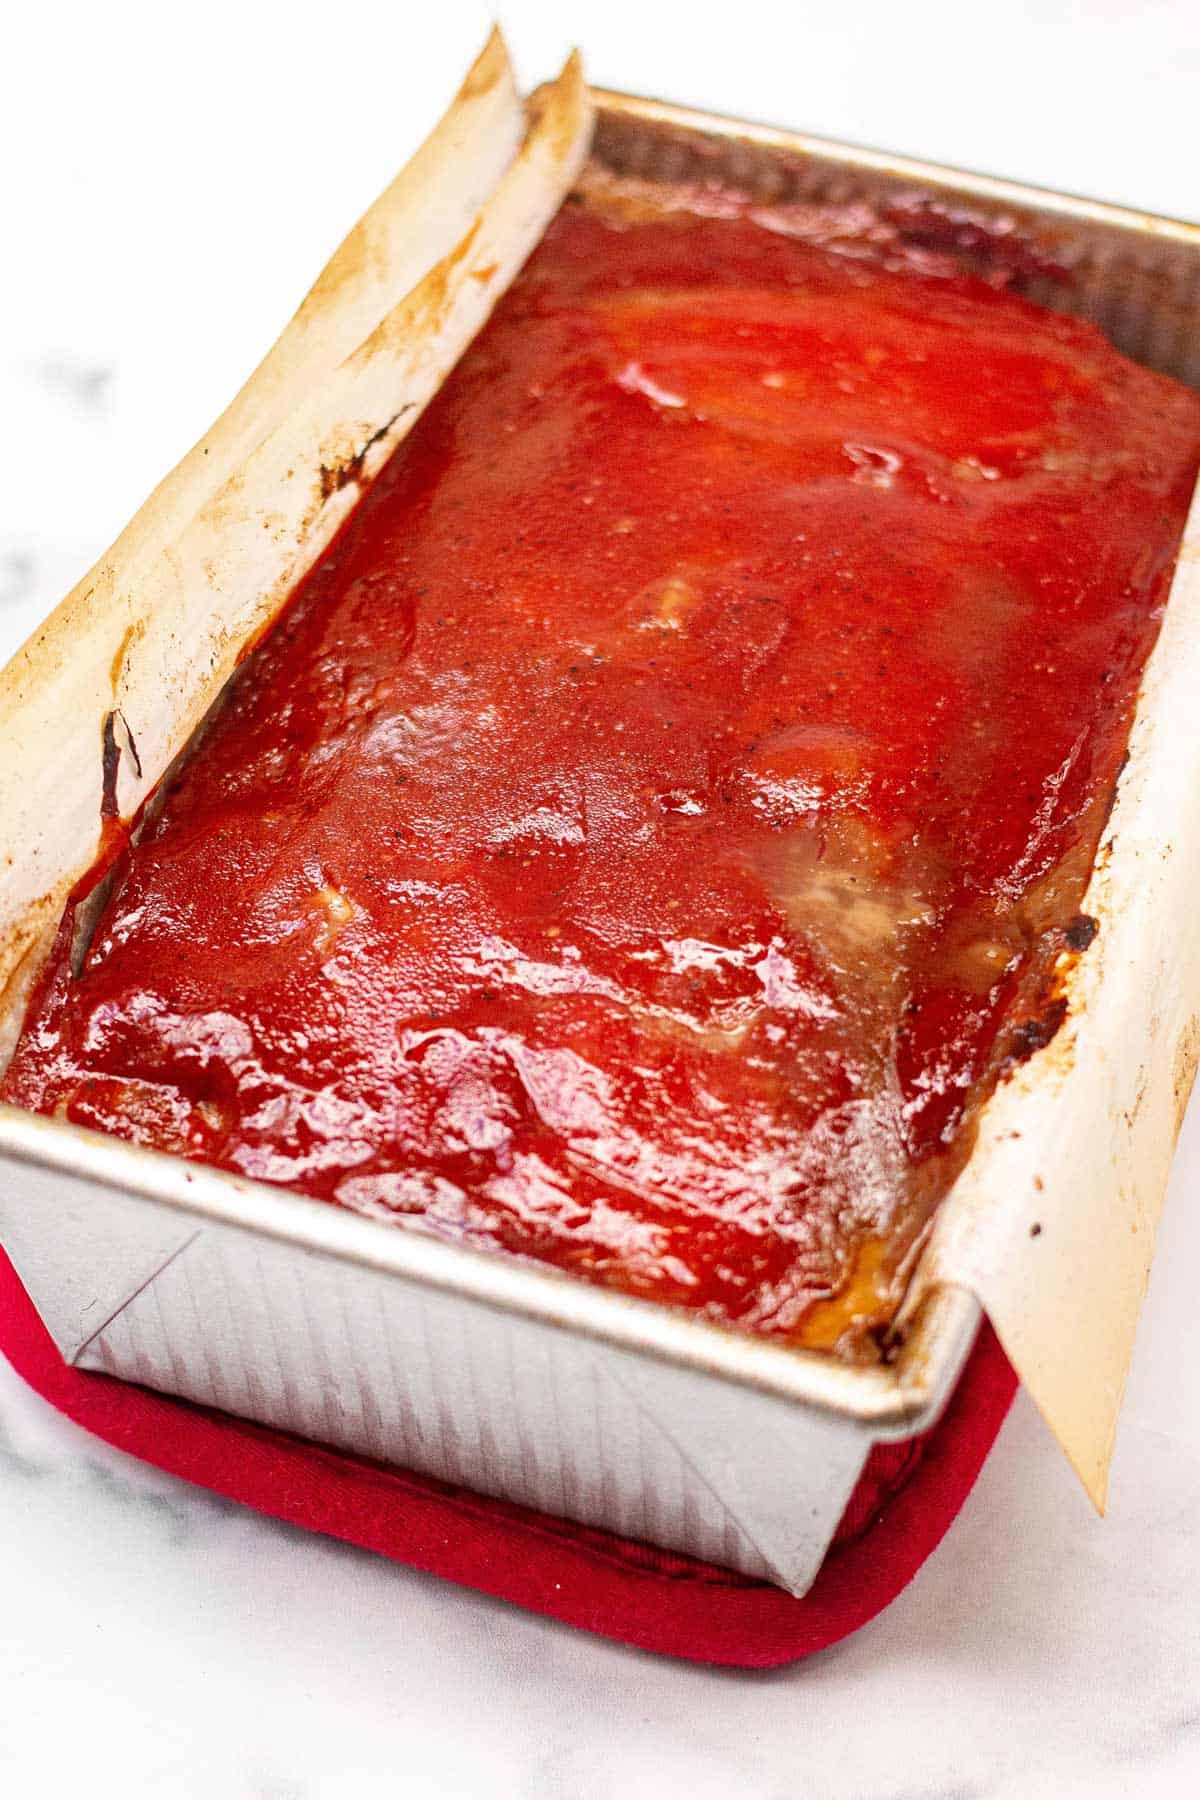 Baked meatloaf covered in ketchup glaze